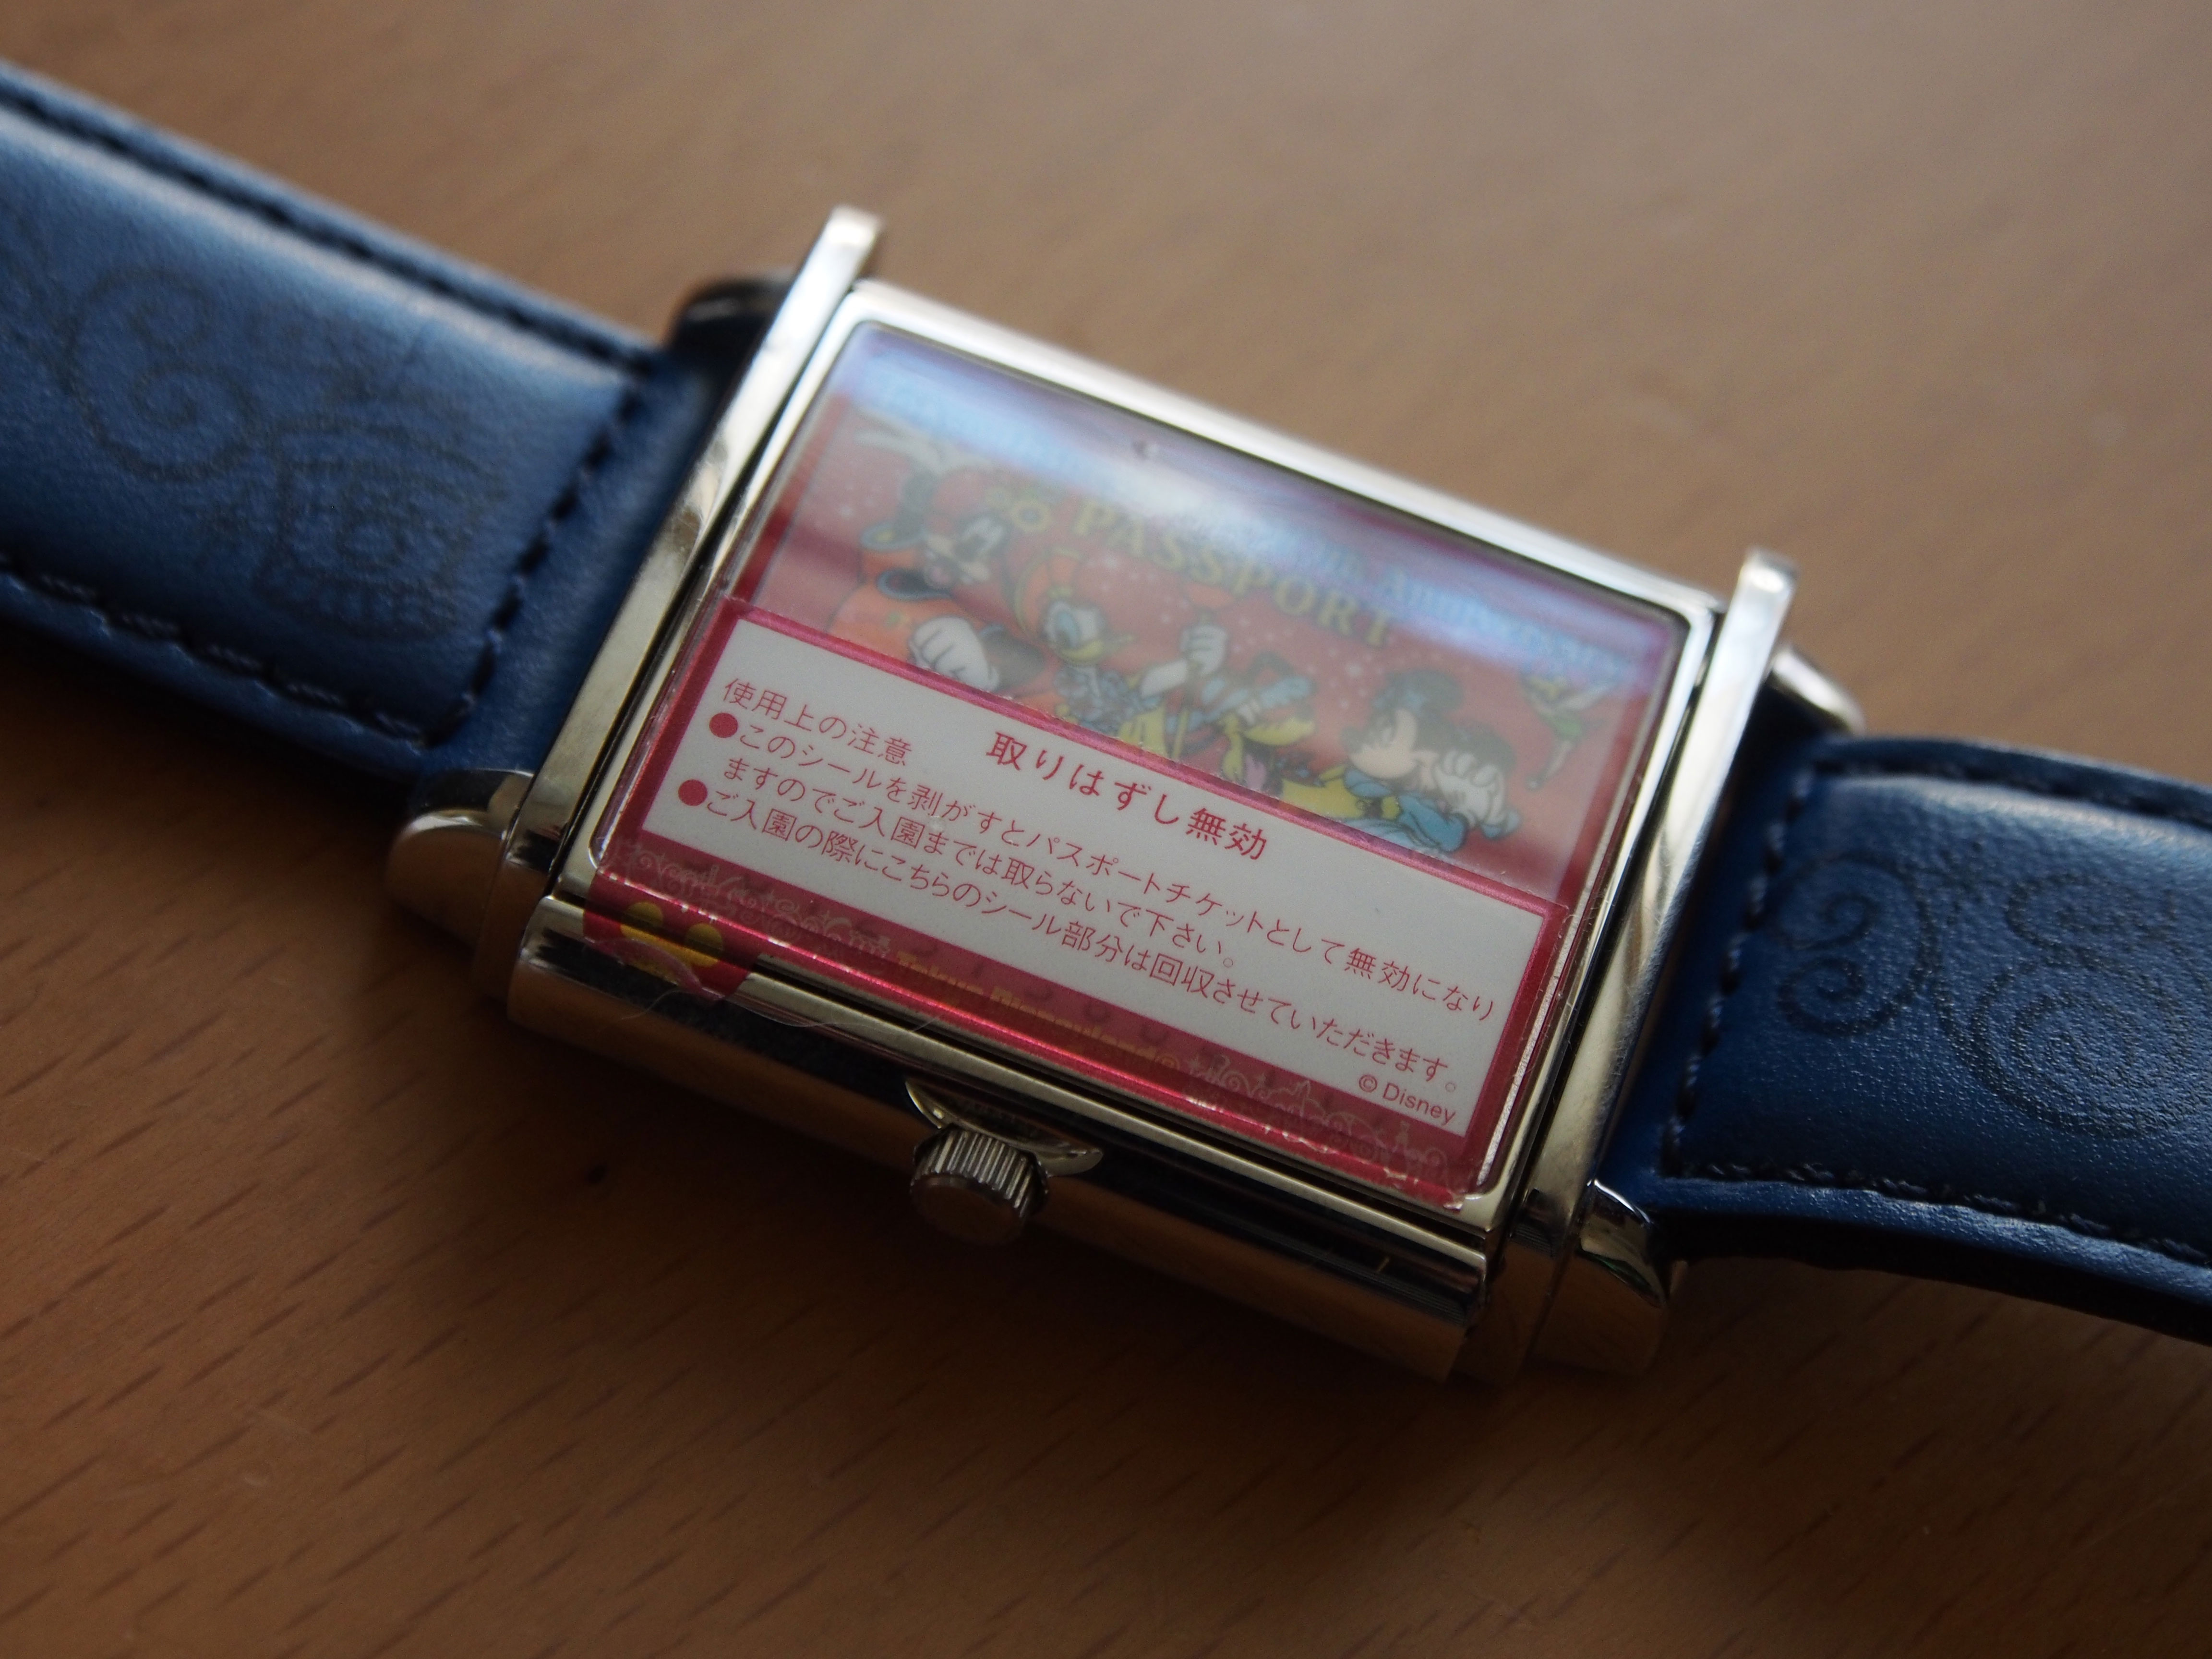 東京ディズニーランドのチケット付時計 ディズニーランド 周年 時計のレビュー ジグソー レビューメディア